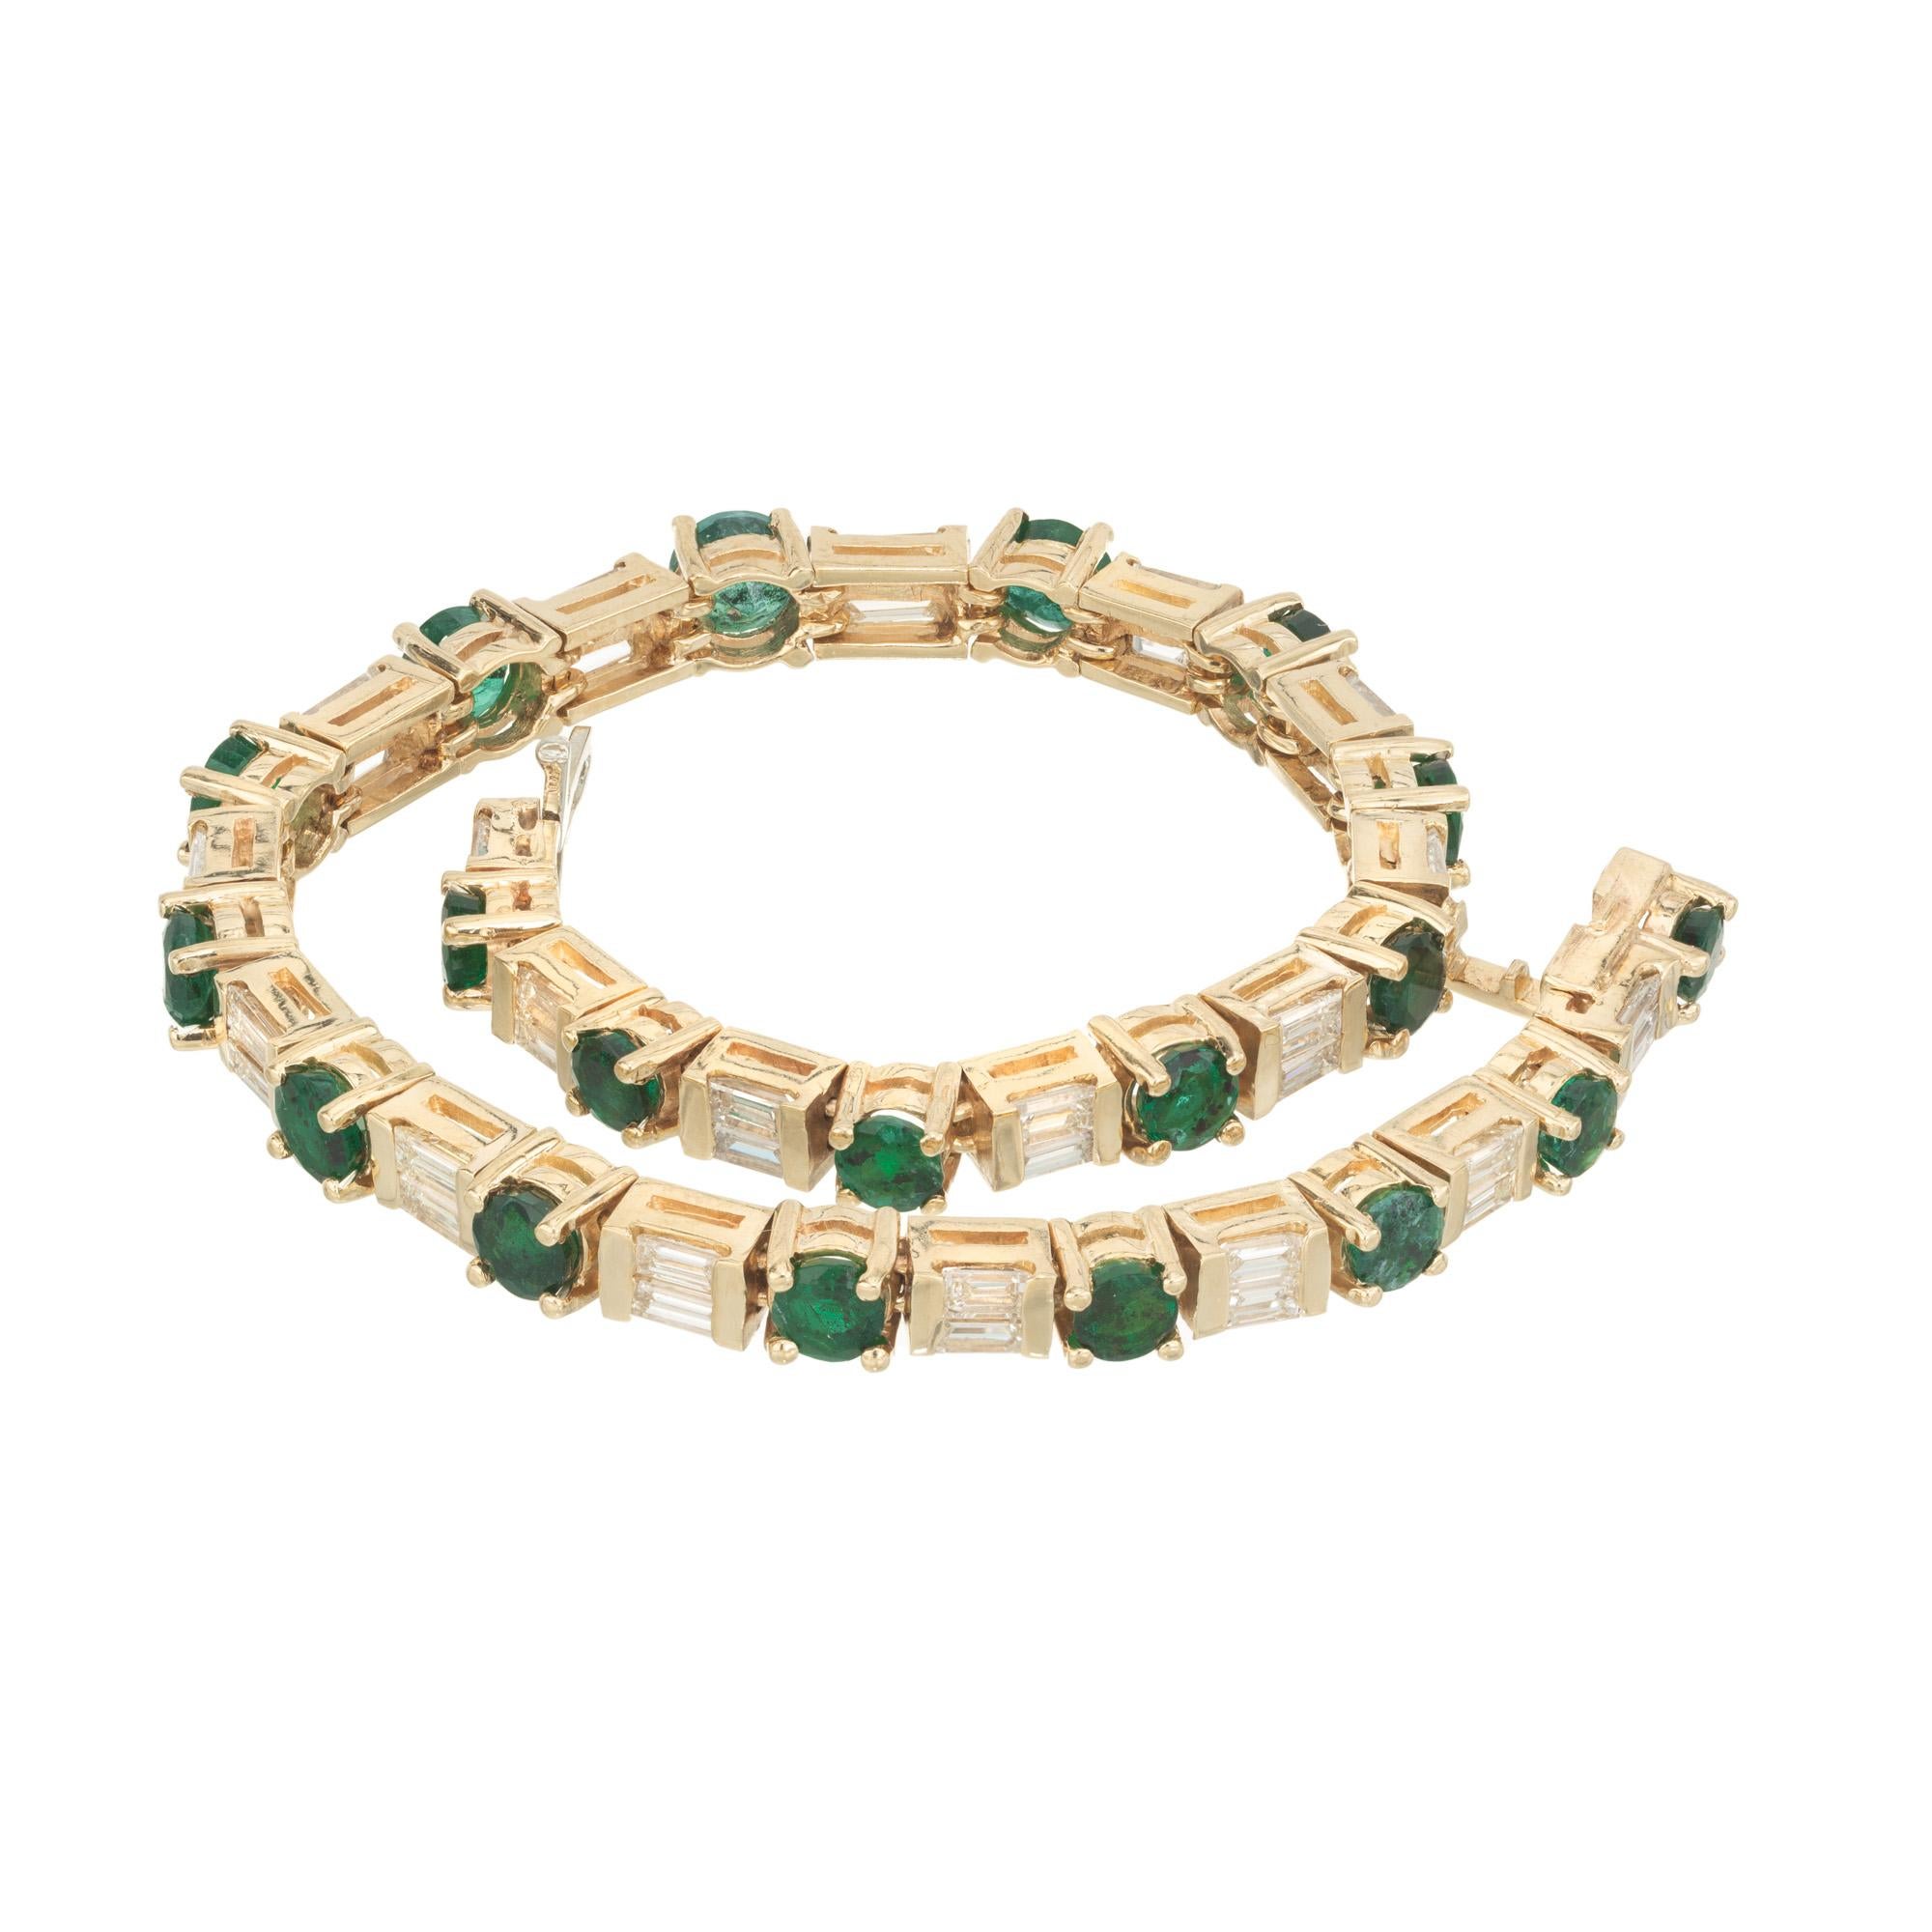 Bracelet de tennis en or avec émeraude brésilienne de couleur vert foncé et diamant baguette. Ce bracelet est orné d'une superbe émeraude brésilienne ronde de 4,40 ct. en guise de pierre précieuse centrale, alternant avec 38 diamants de taille